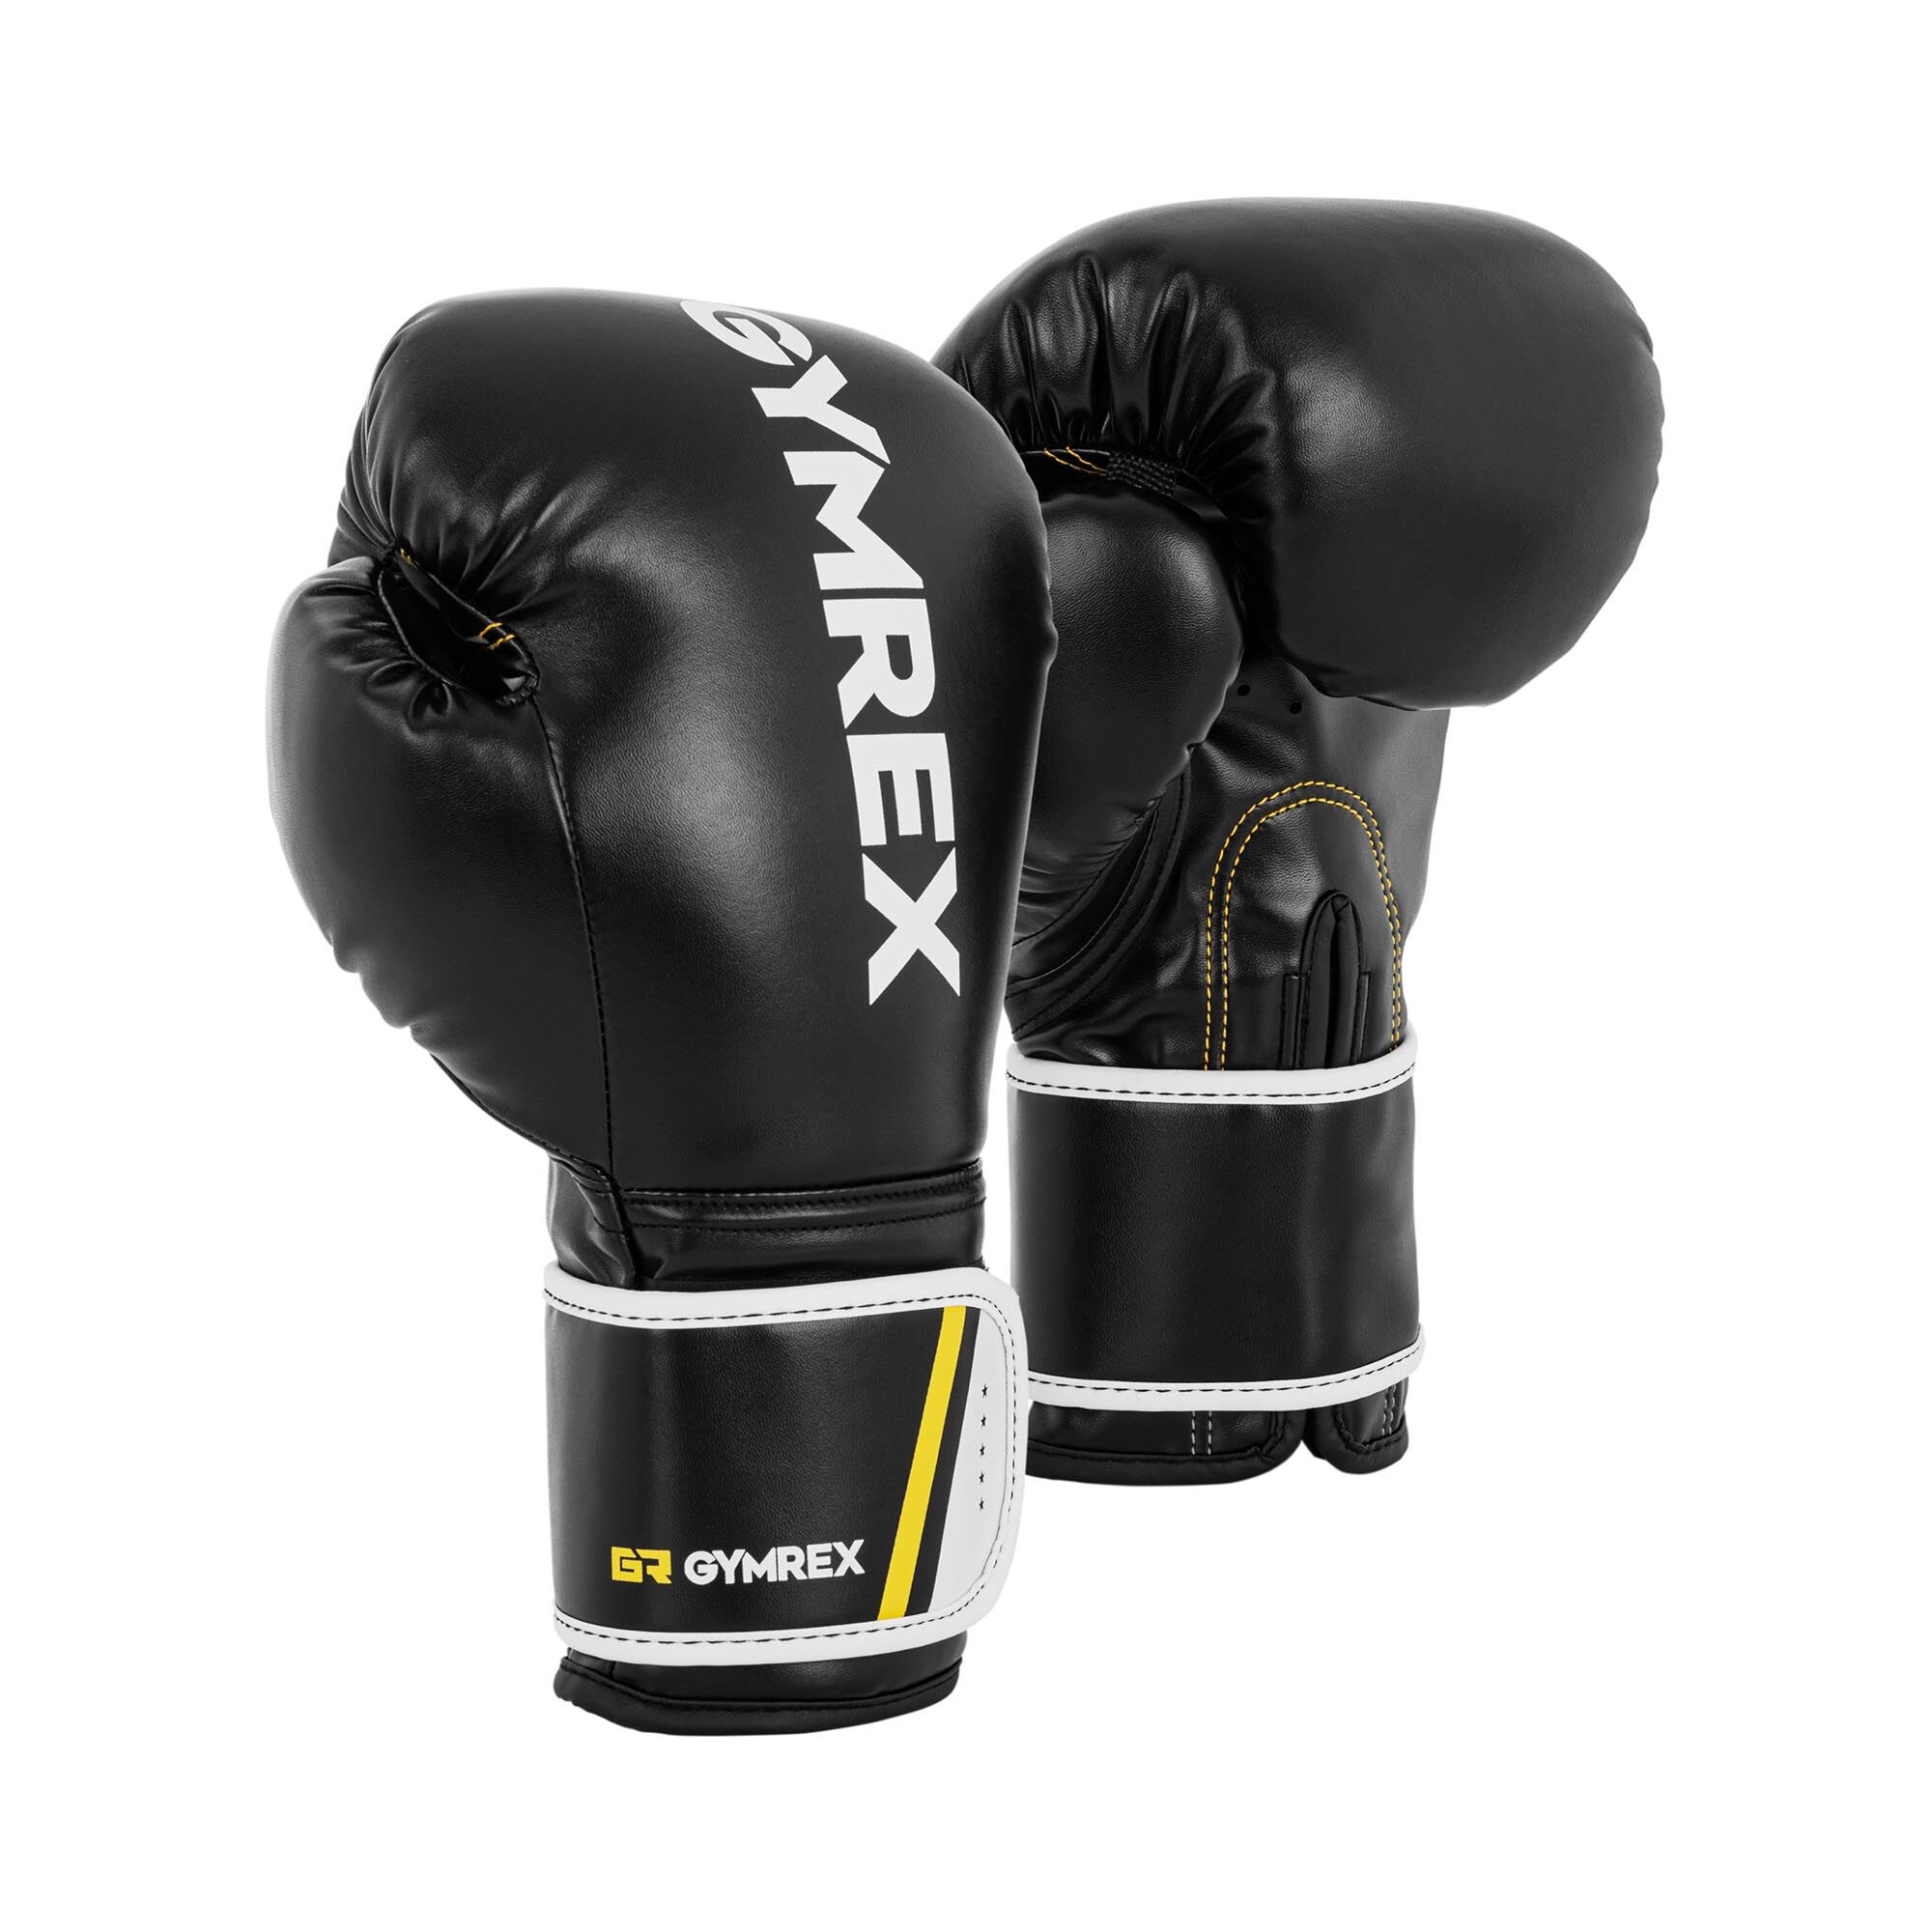 Gymrex Boxerské rukavice - 10 oz - černé GR-BG 10BB